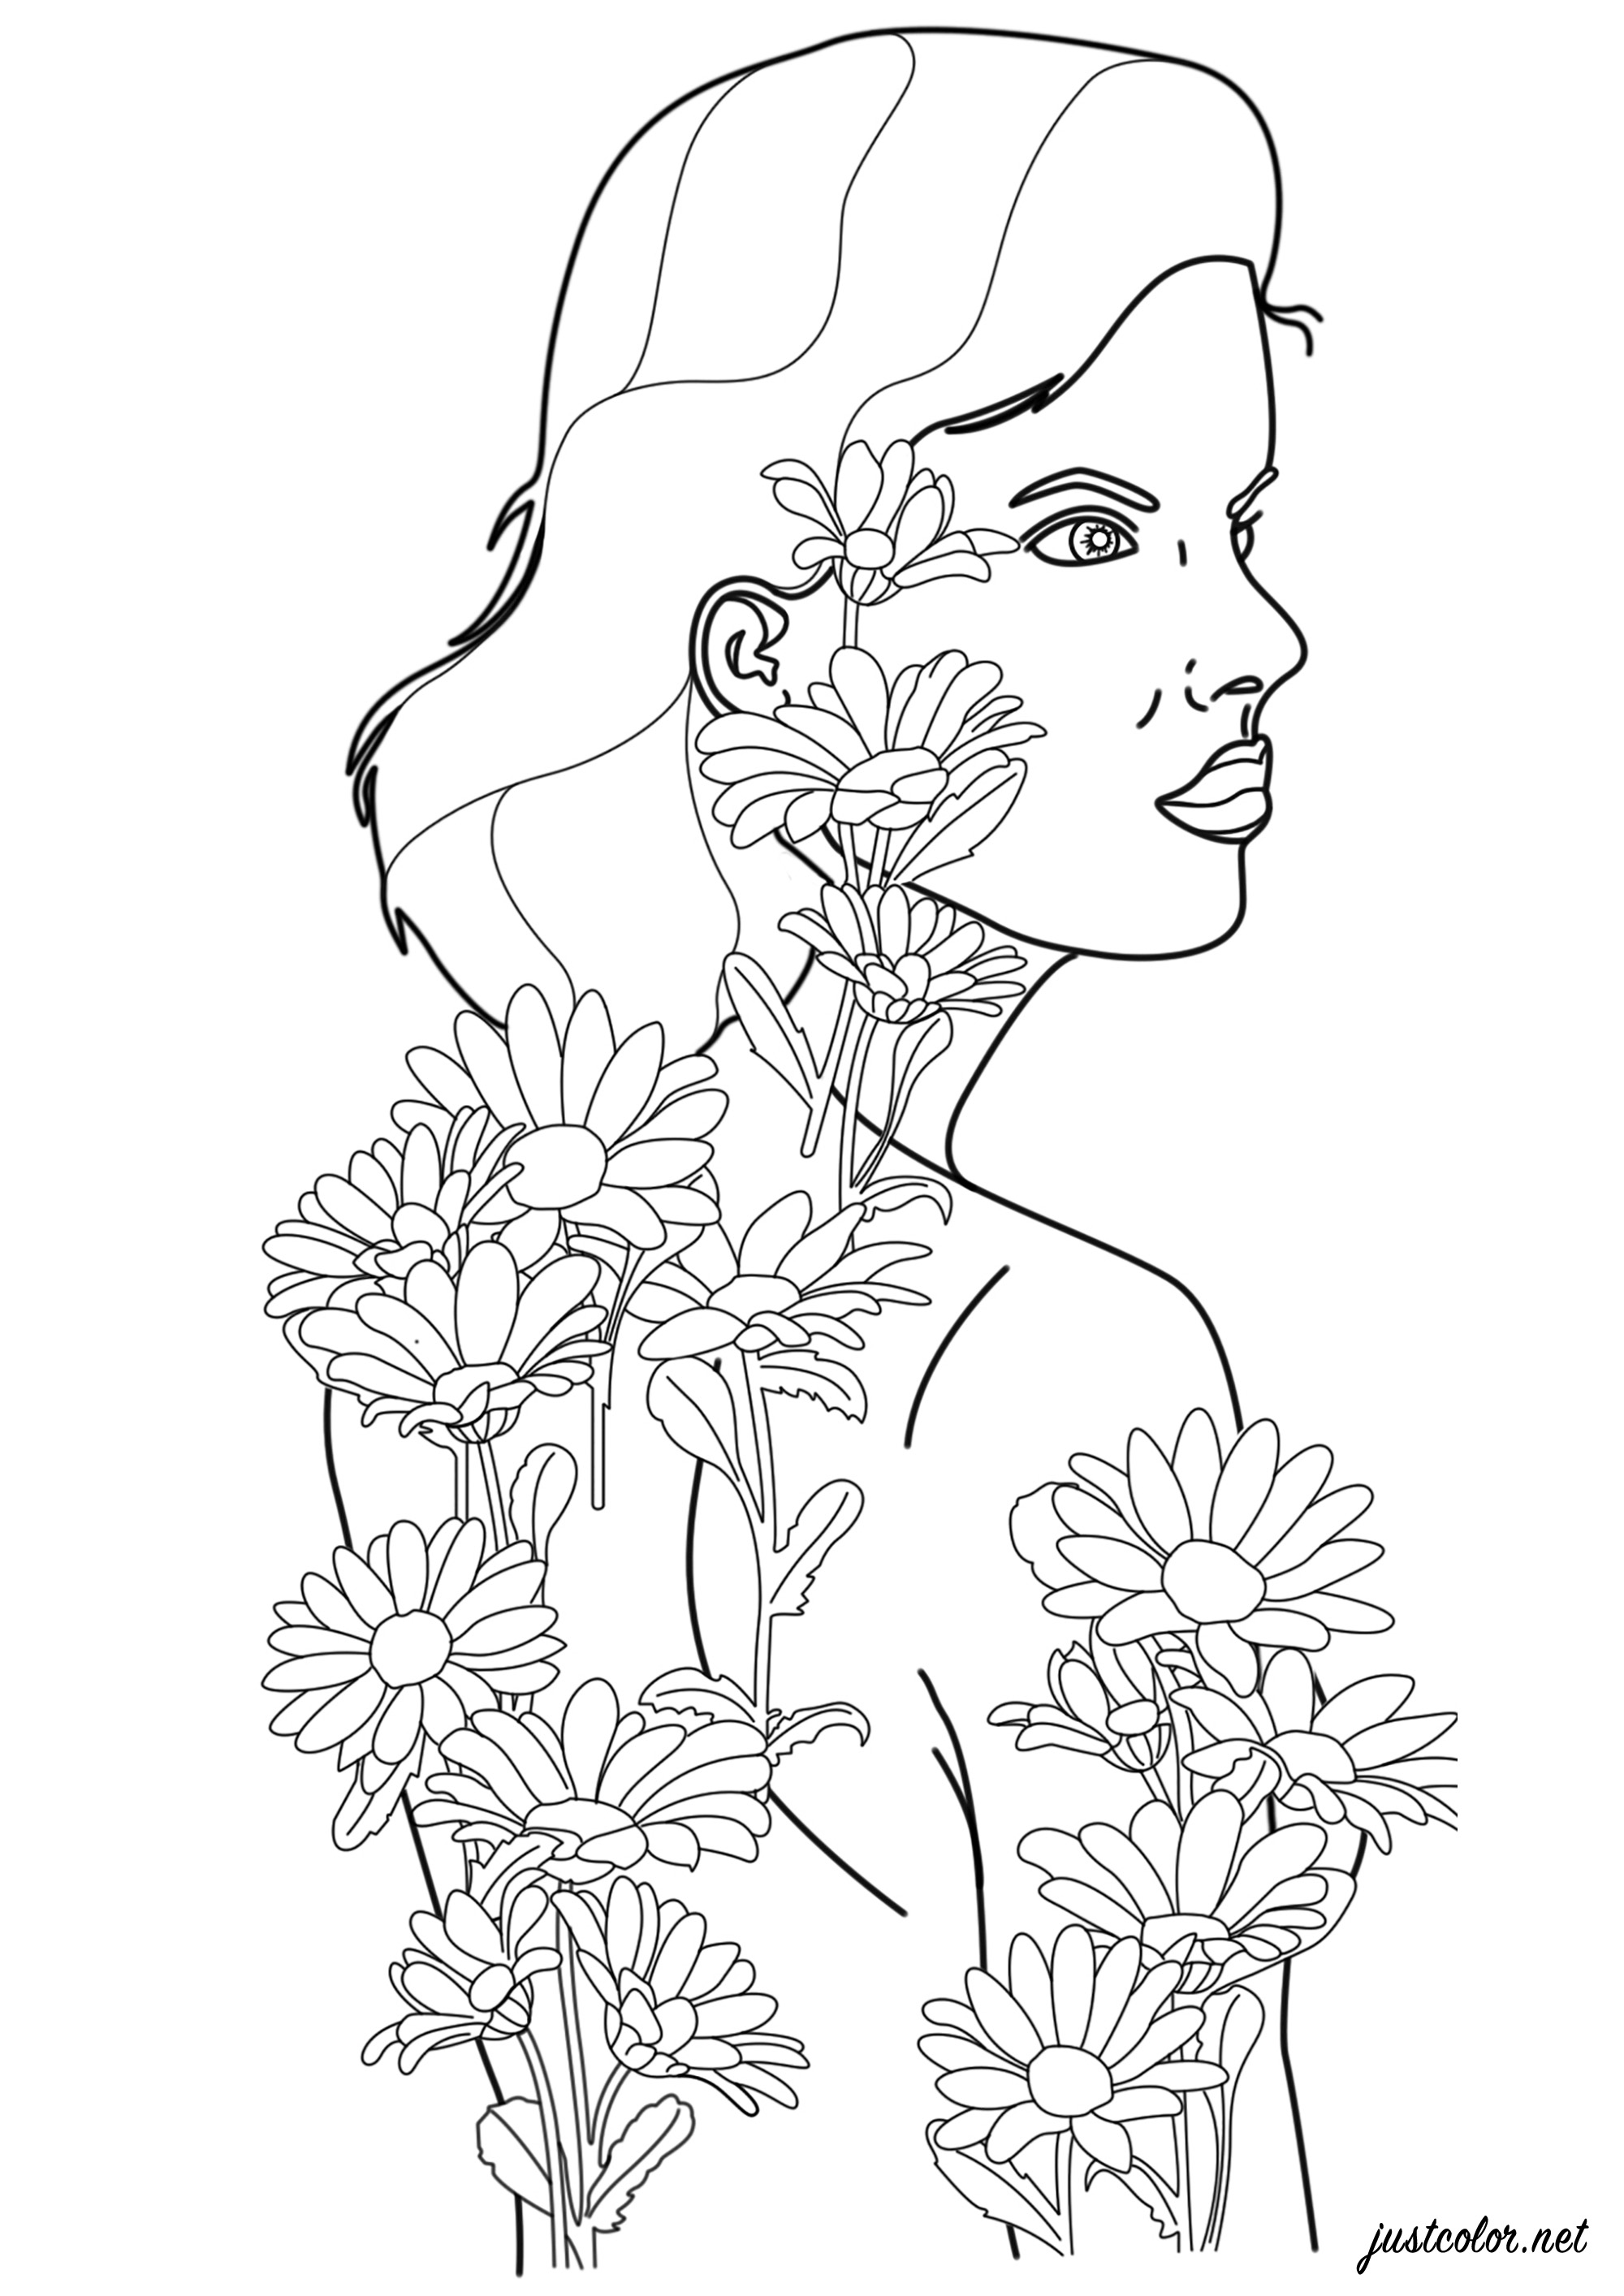 Mulher com tatuagens de flores que ganham vida e se tornam reais, Artista : Warrick